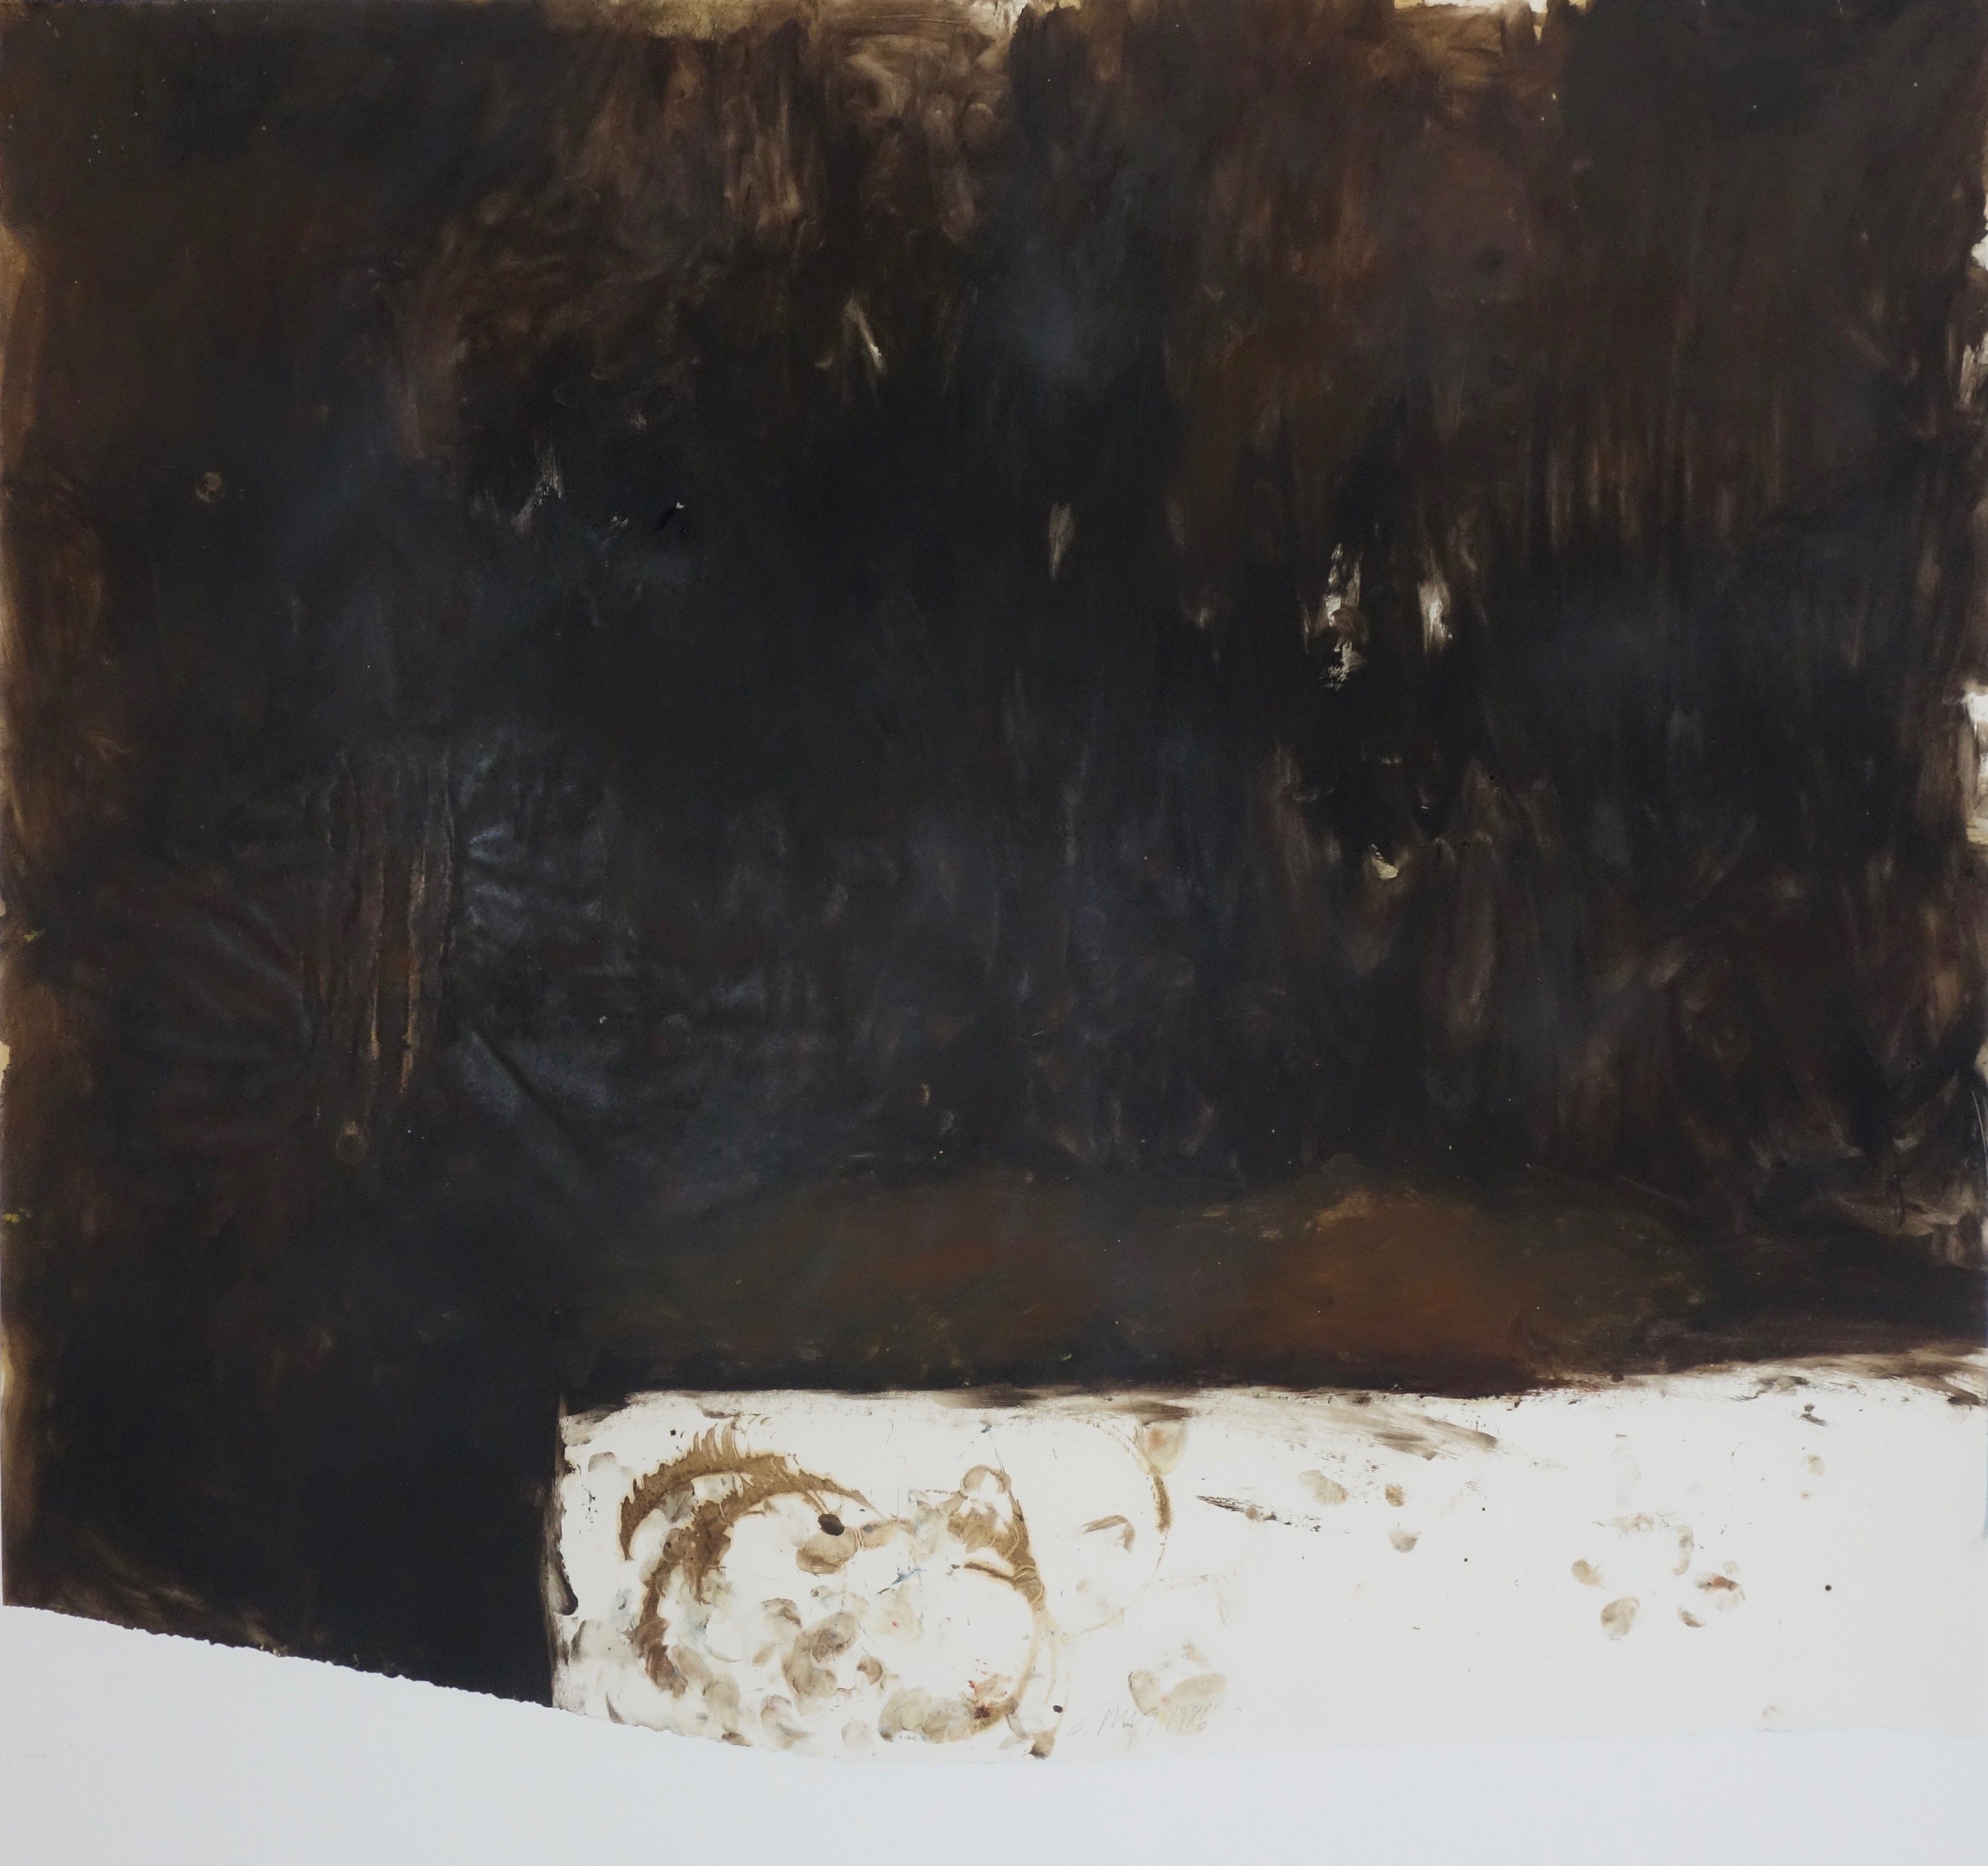 Arbeit auf Papier 8, Eiöltempera und Öl auf Papier, ca. 77,5 x 88 cm, 1986, Erwin Holl